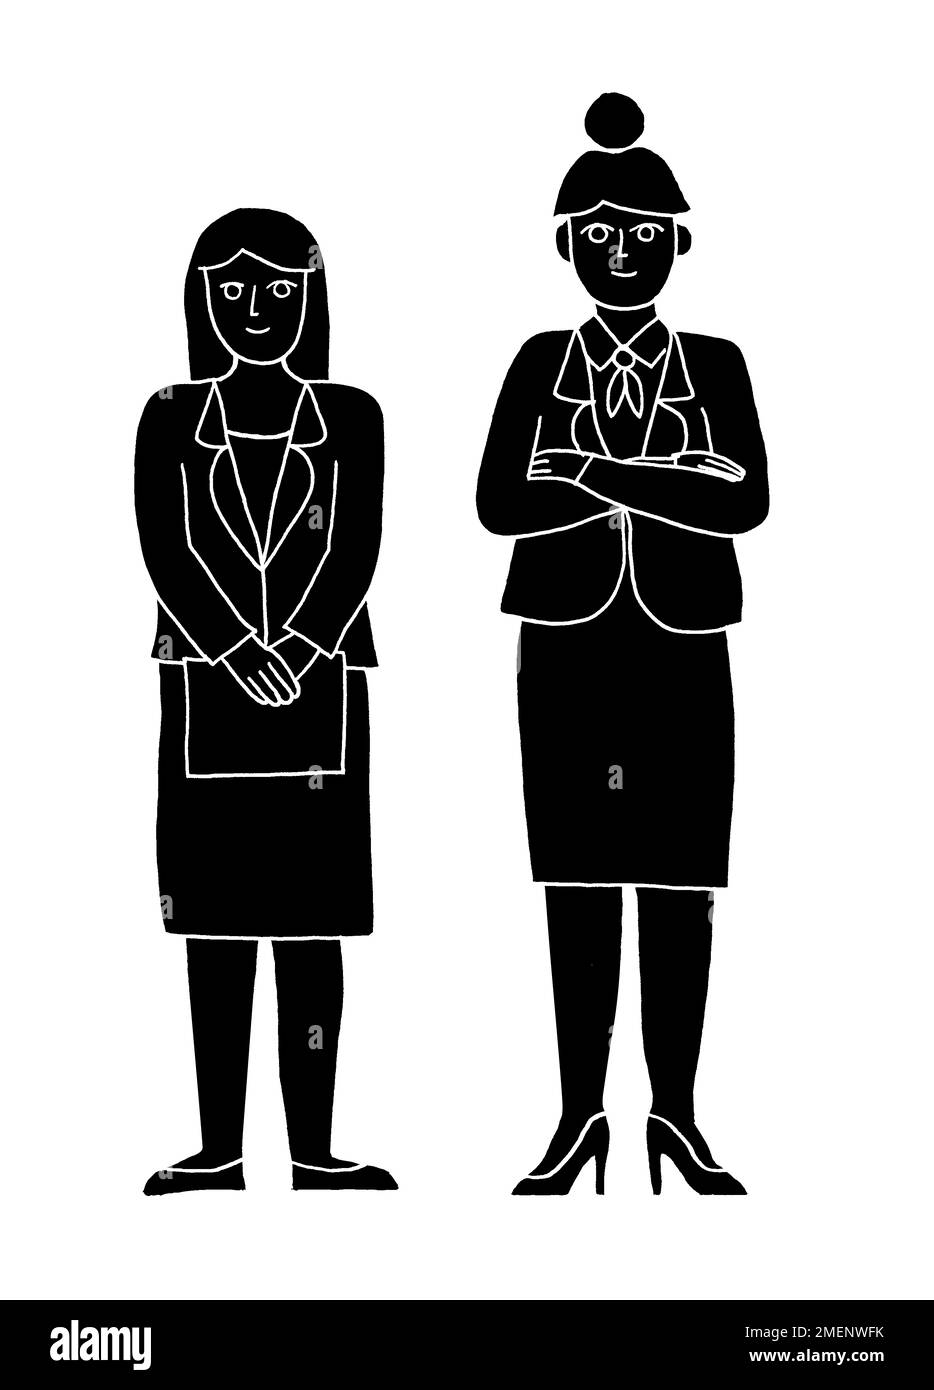 Illustrazione in bianco e nero di due donne d'affari in piedi l'una accanto all'altra, una dowdy e una power-dressed Foto Stock